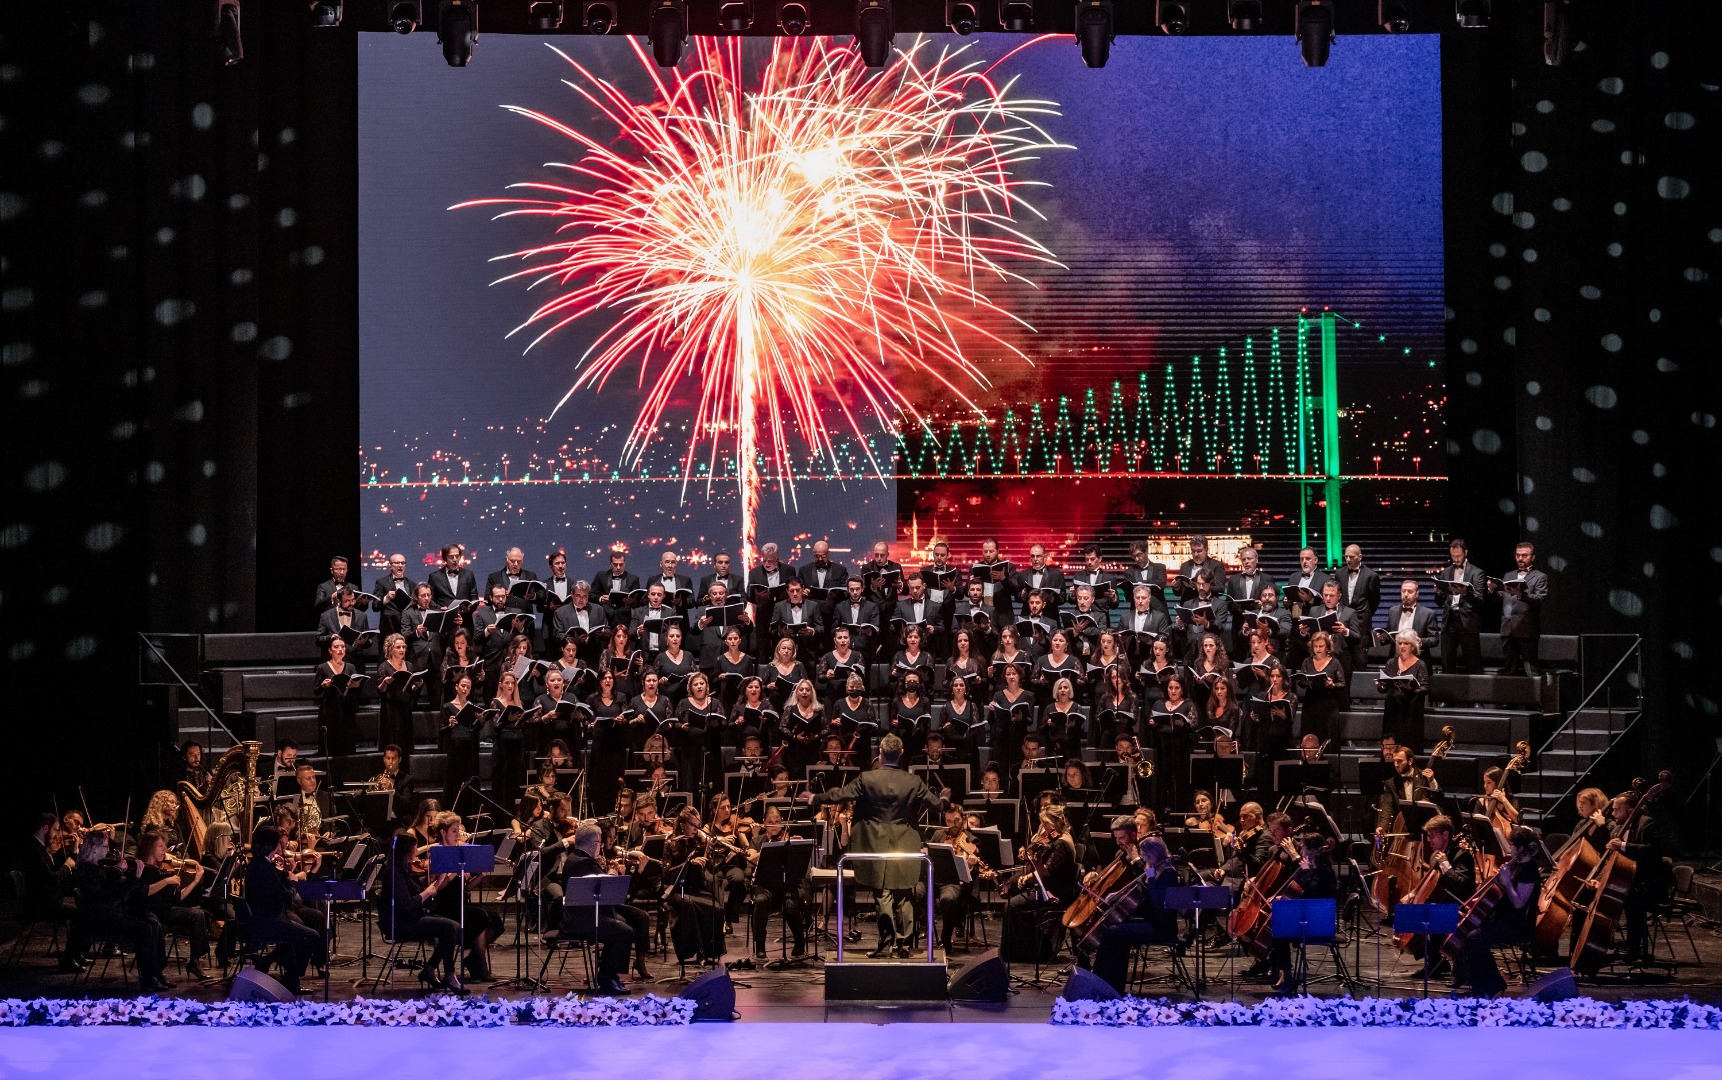 İDOB "Yeni Yıl Konseri" ile 2022'ye veda etti